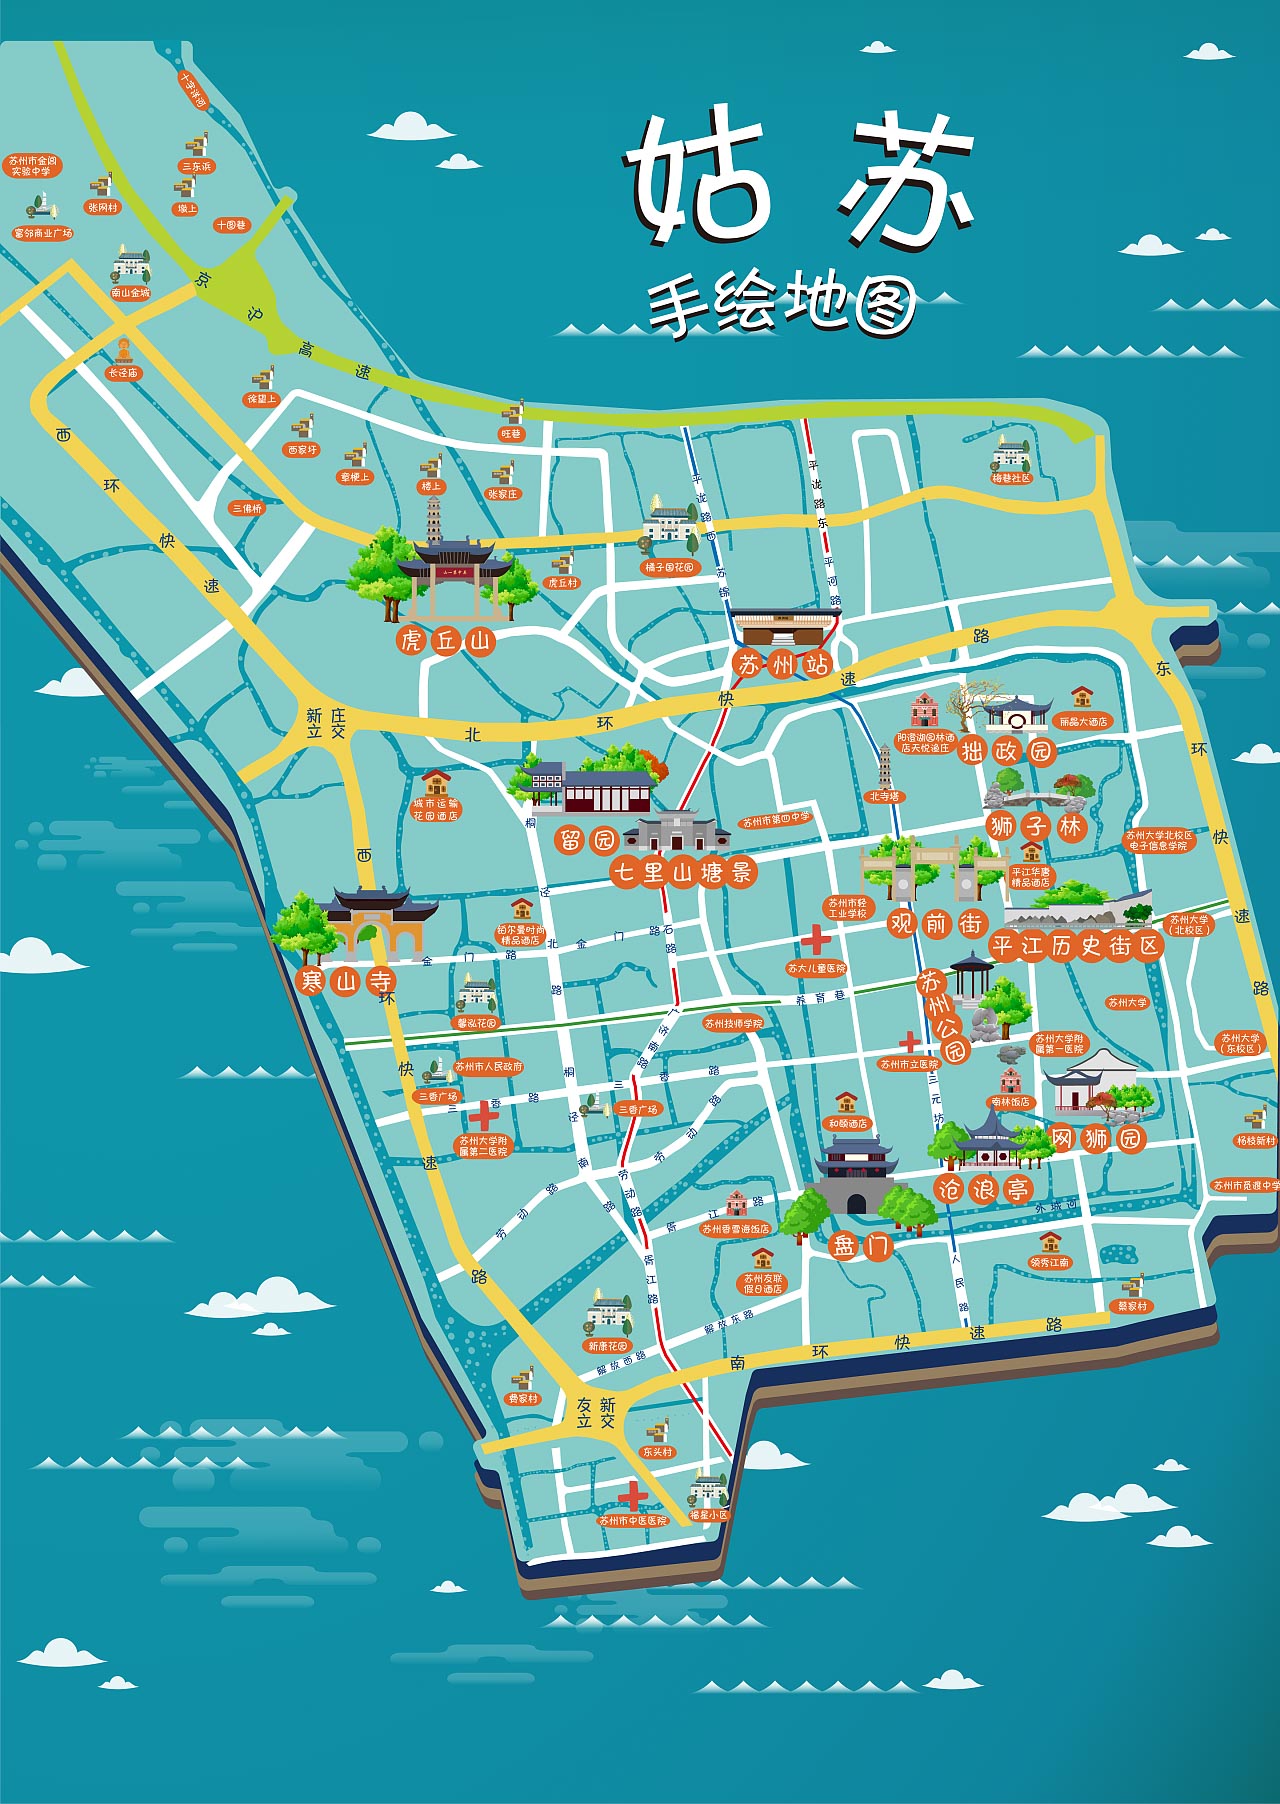 竹山手绘地图景区的文化宝藏